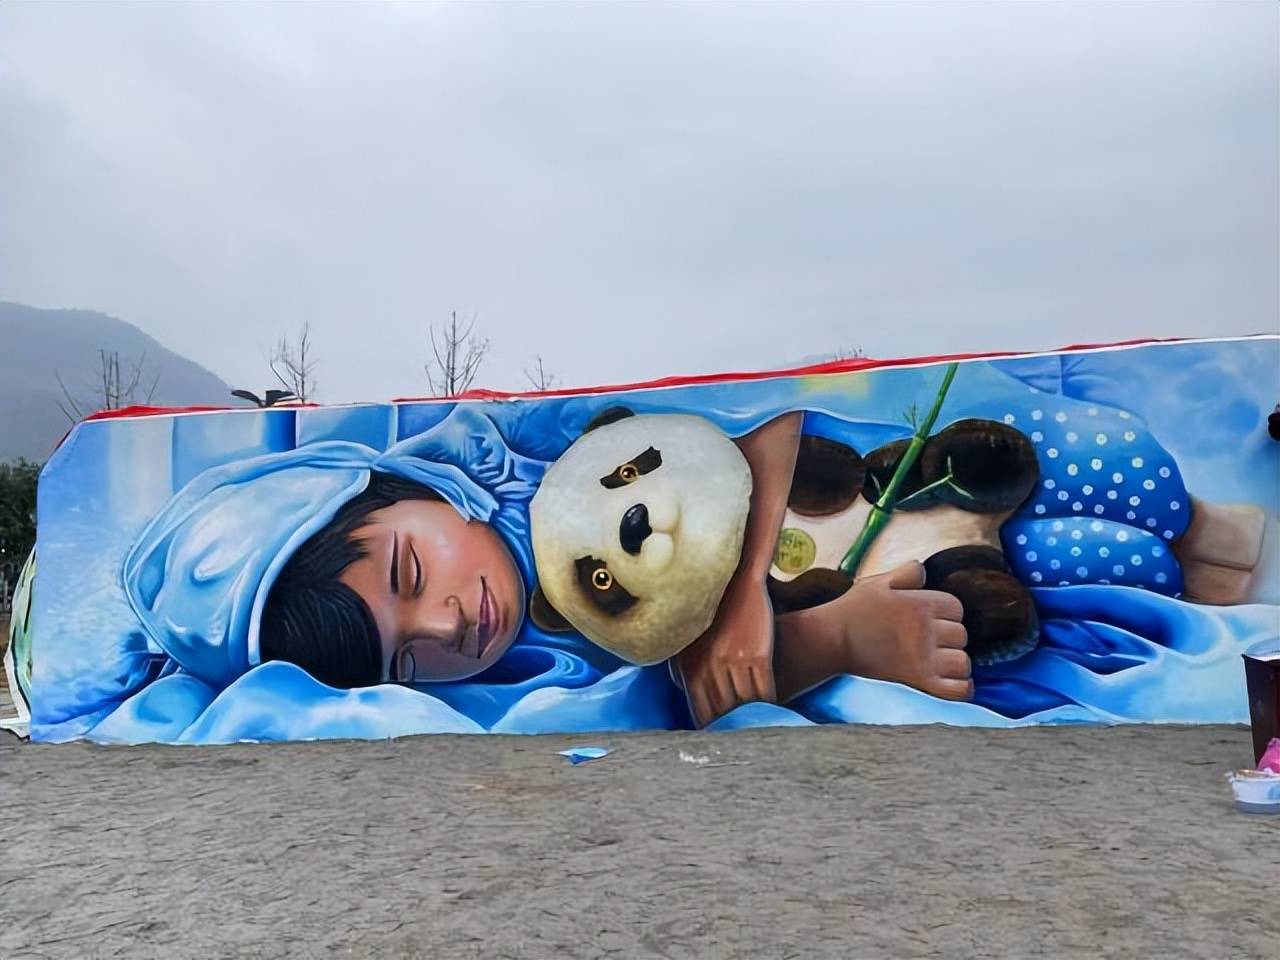 其创作的大型壁画《童话竹宝》被北京冬奥会动画宣传片使用